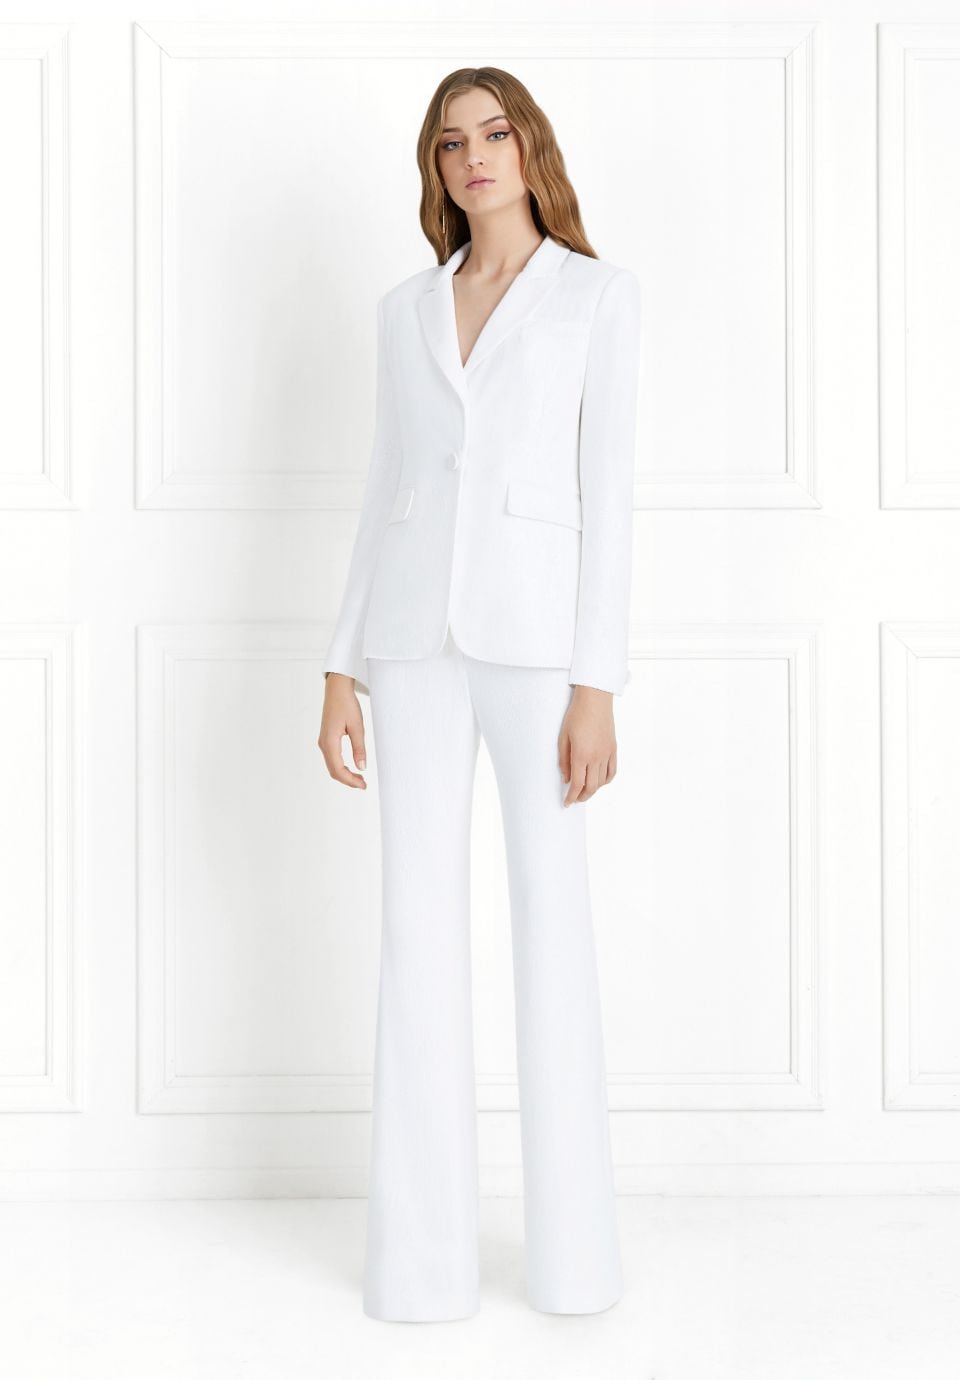 A woman wears a white pantsuit